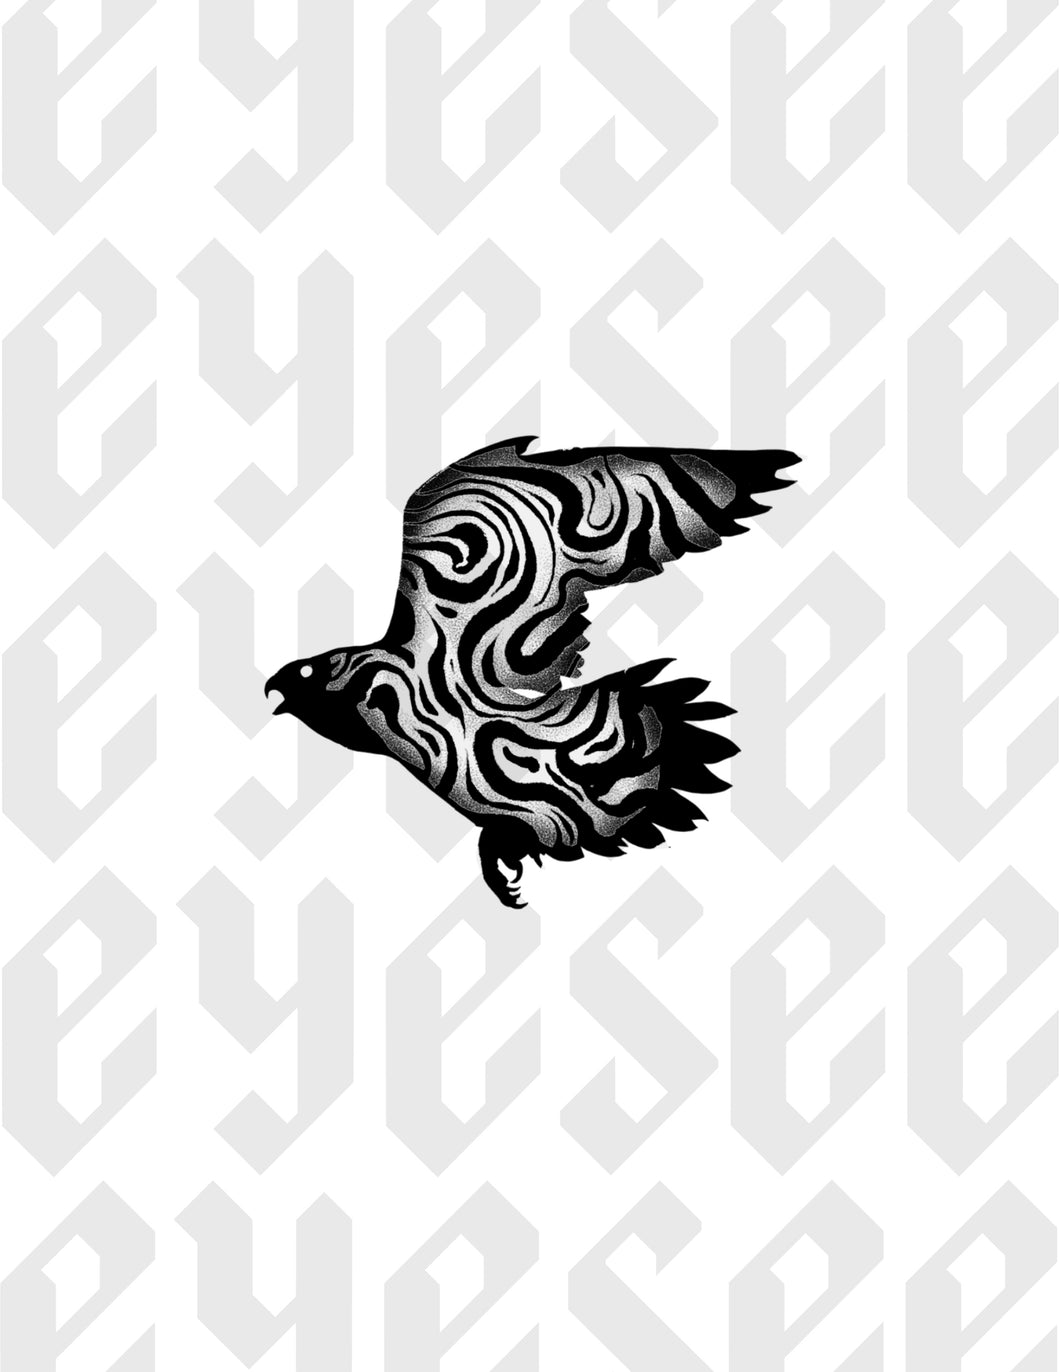 Bird of Prey 2 by Stephen